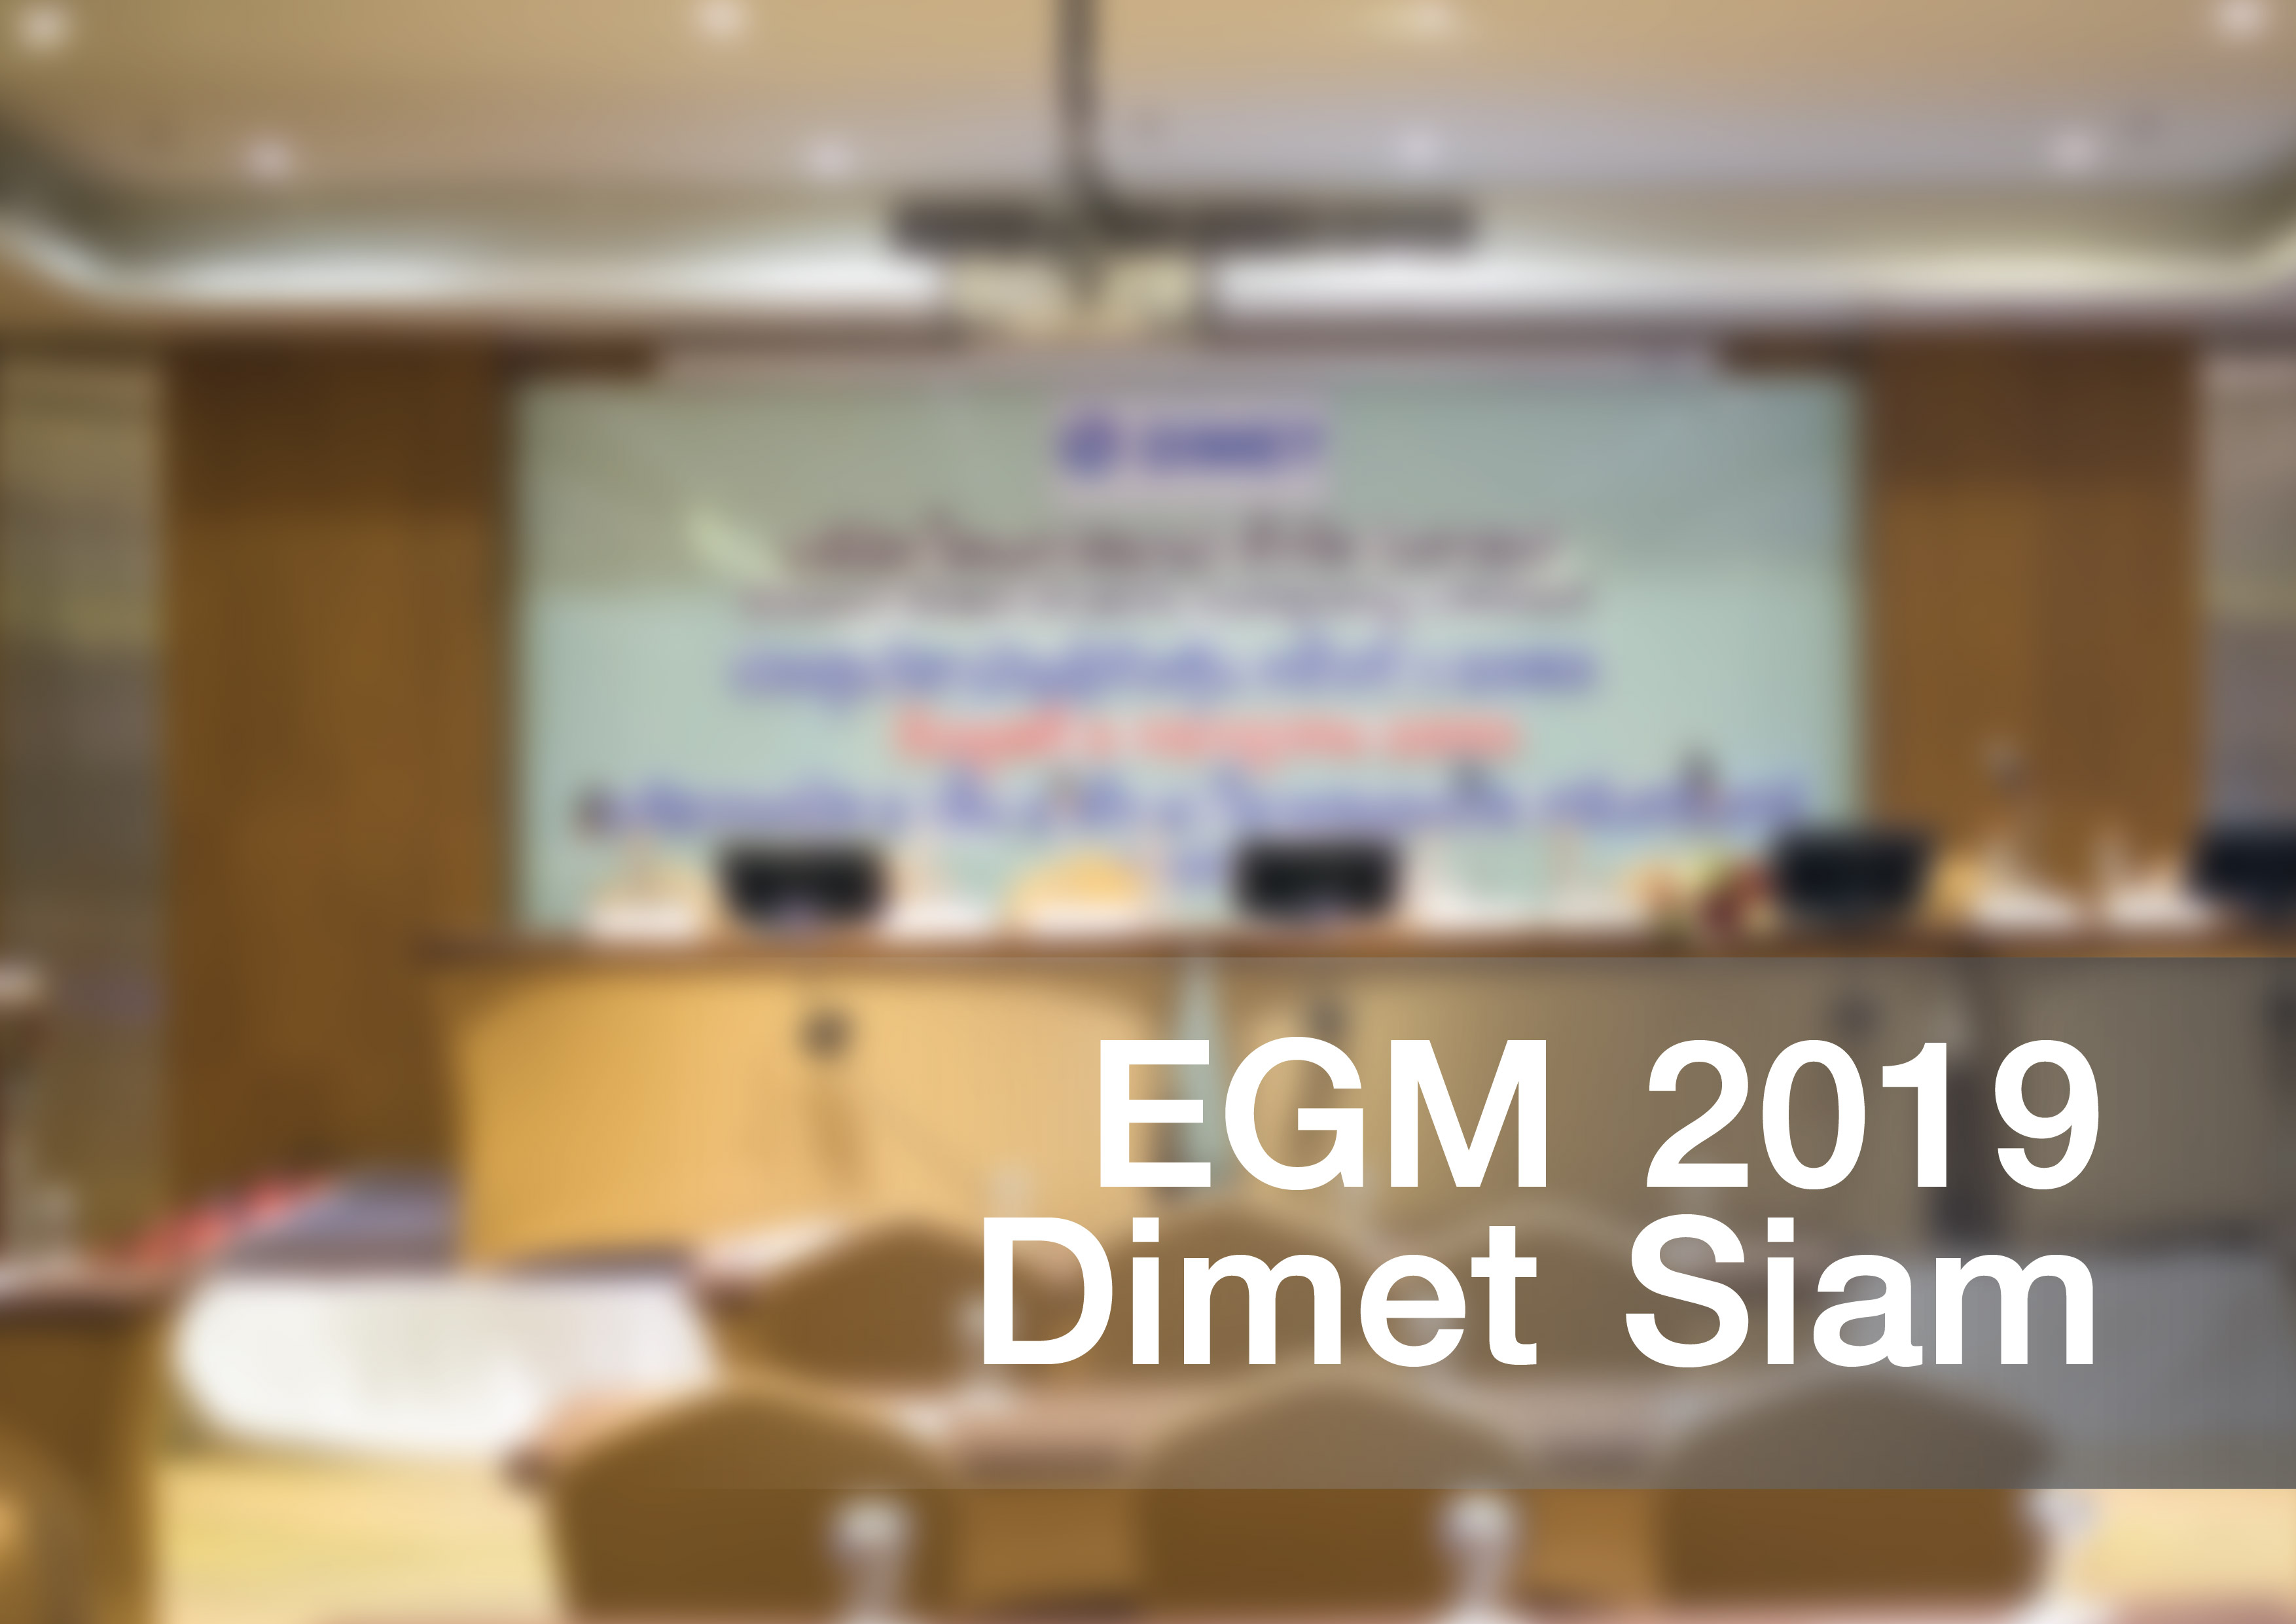 EGM 2019 Dimetsiam